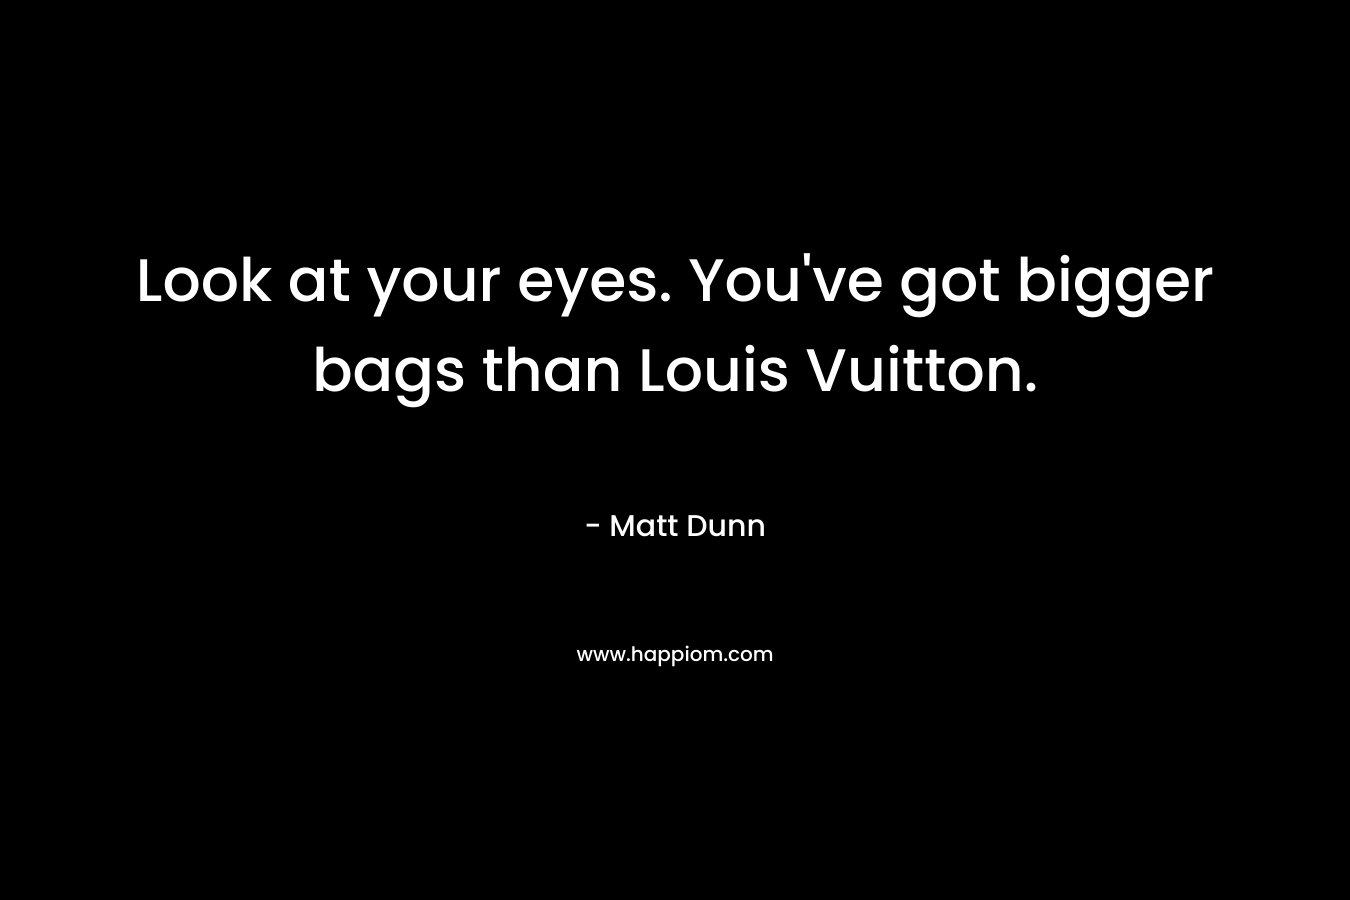 Look at your eyes. You’ve got bigger bags than Louis Vuitton. – Matt Dunn